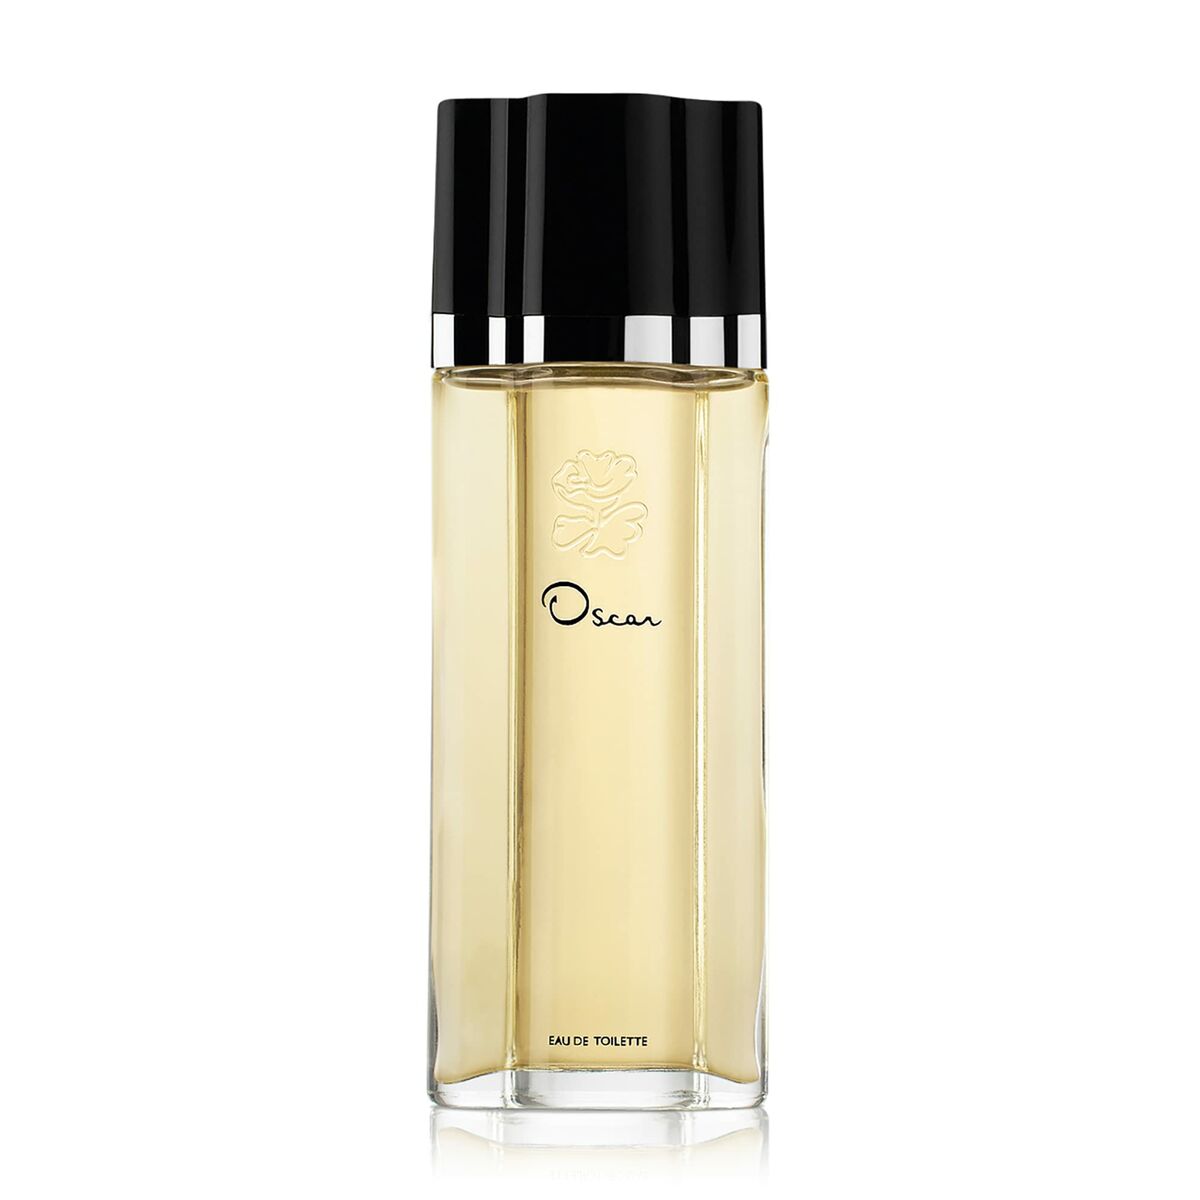 Perfume des femmes Oscar de la Renta Oscar EDT 100 ml